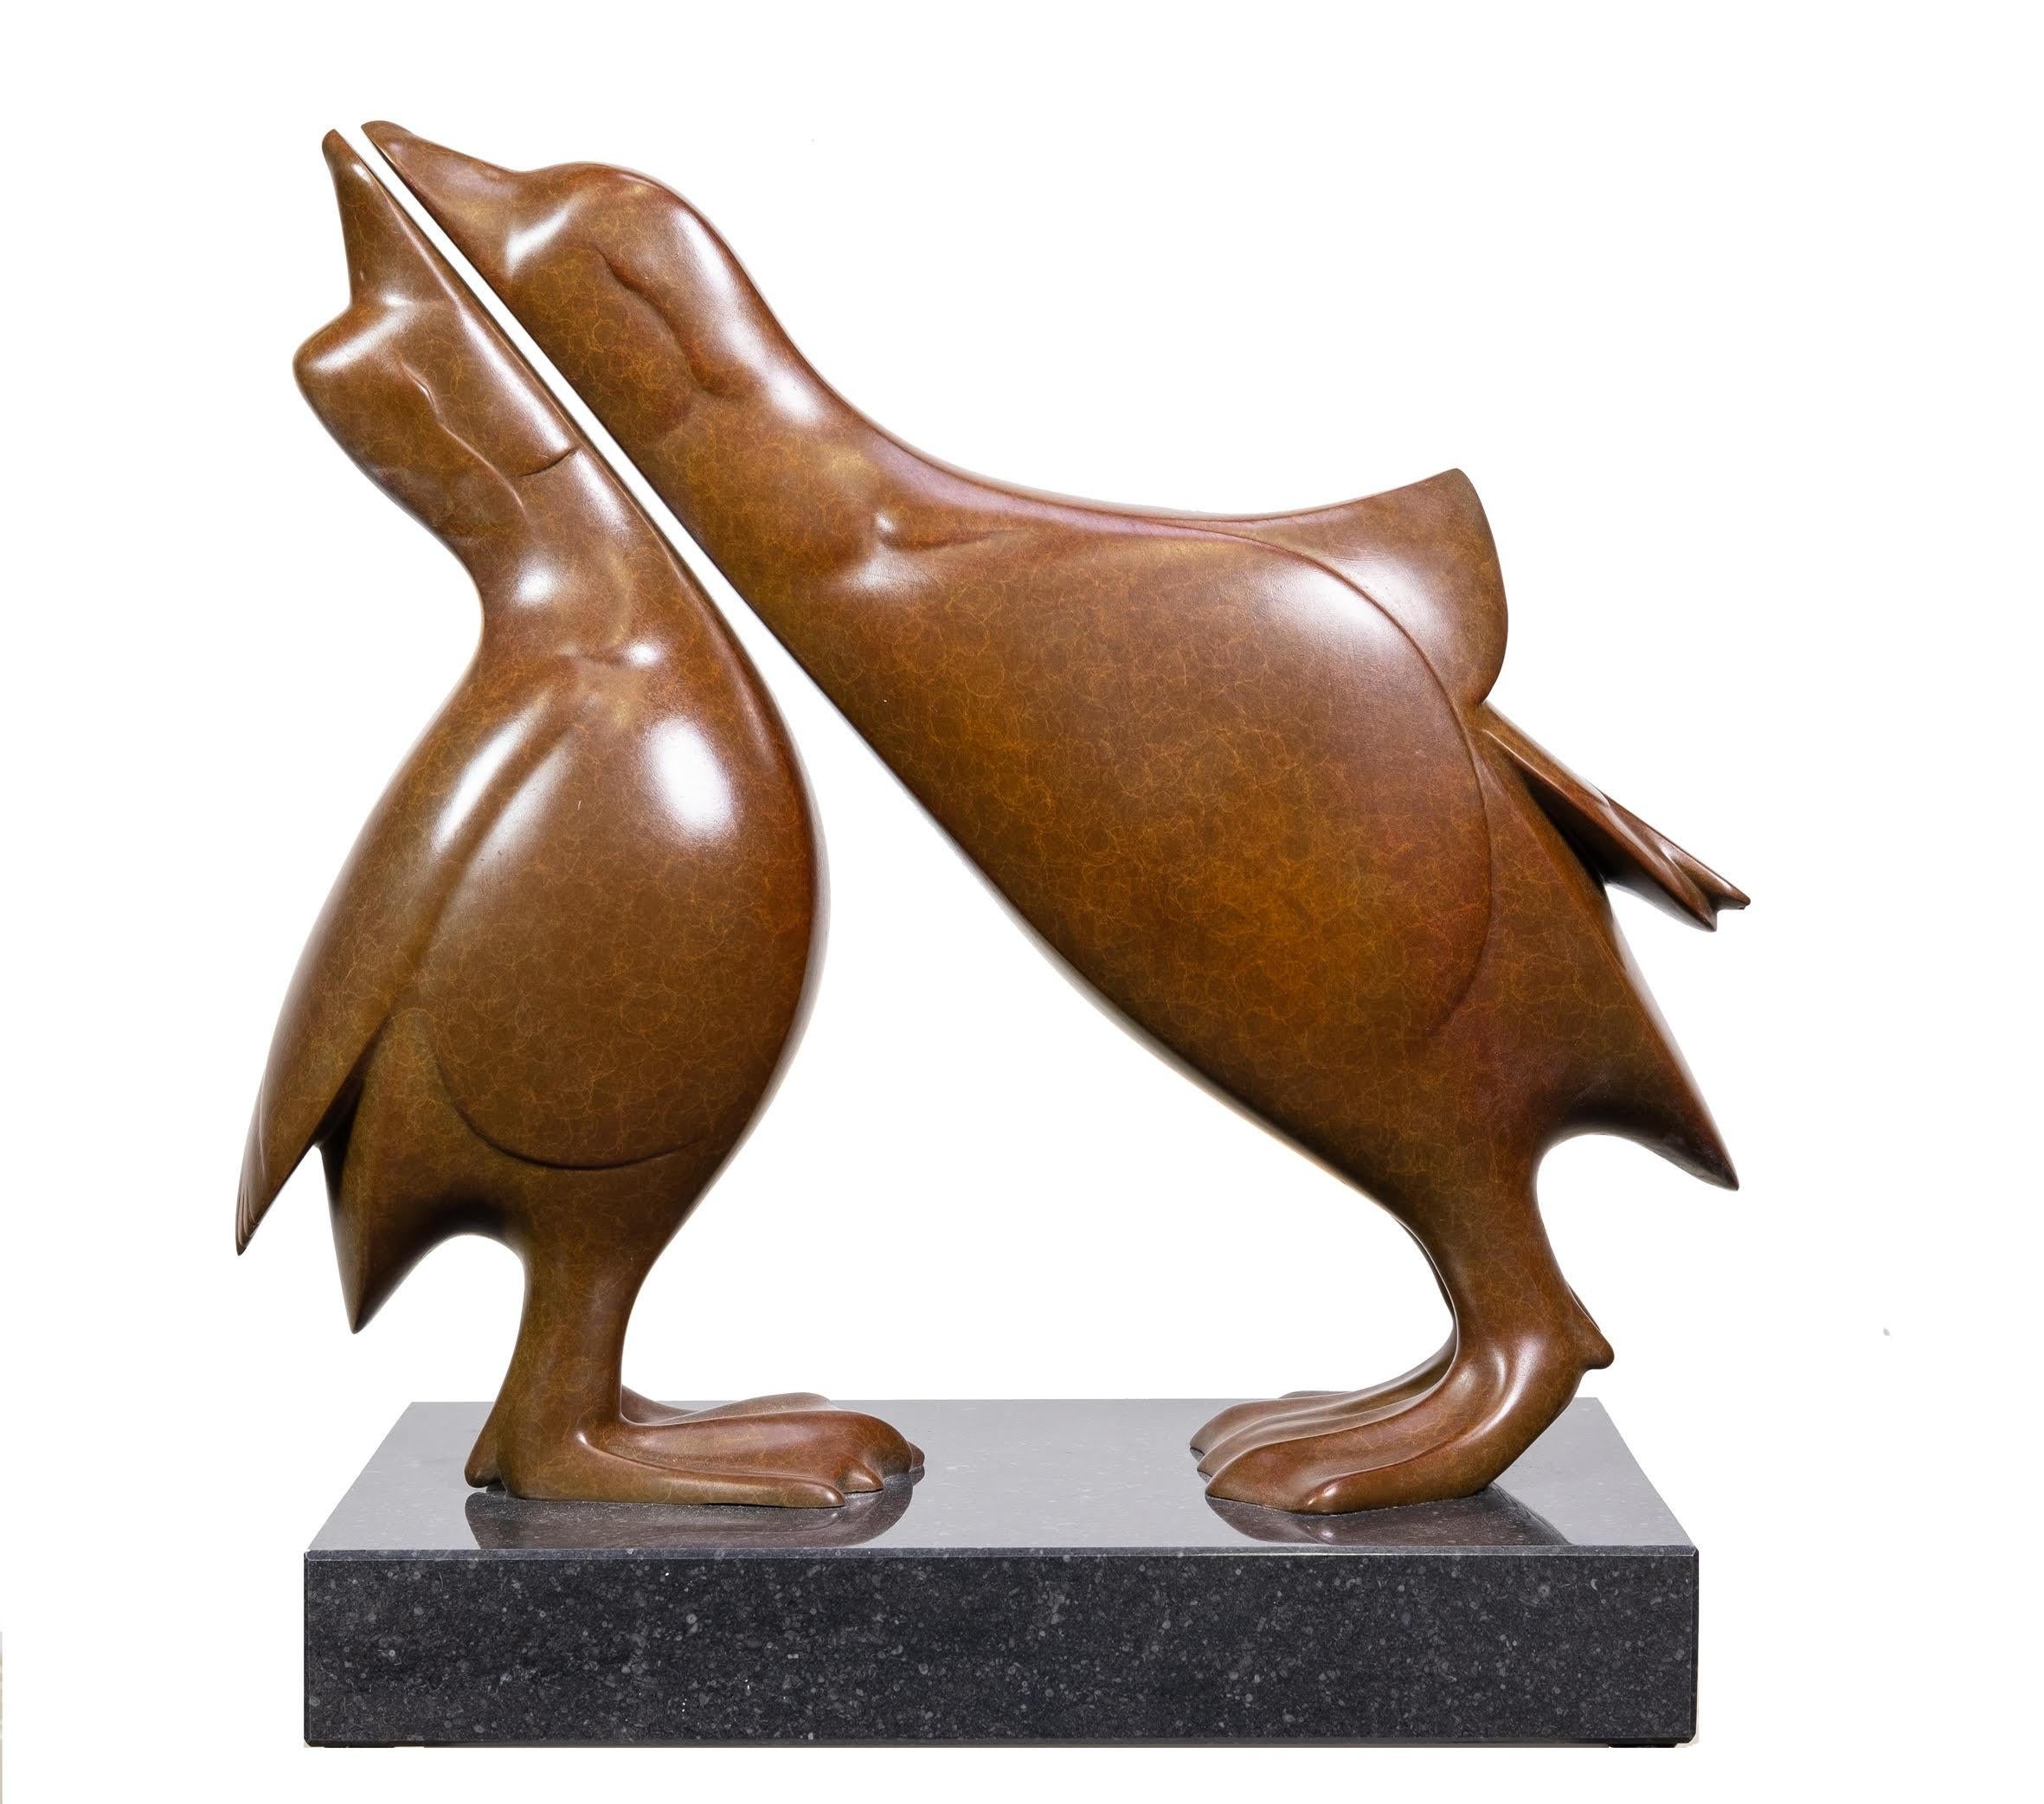 Evert den Hartog Figurative Sculpture - Twee Mandarijneenden no. 2 Two Mandarin Ducks Bronze Sculpture Contemporary